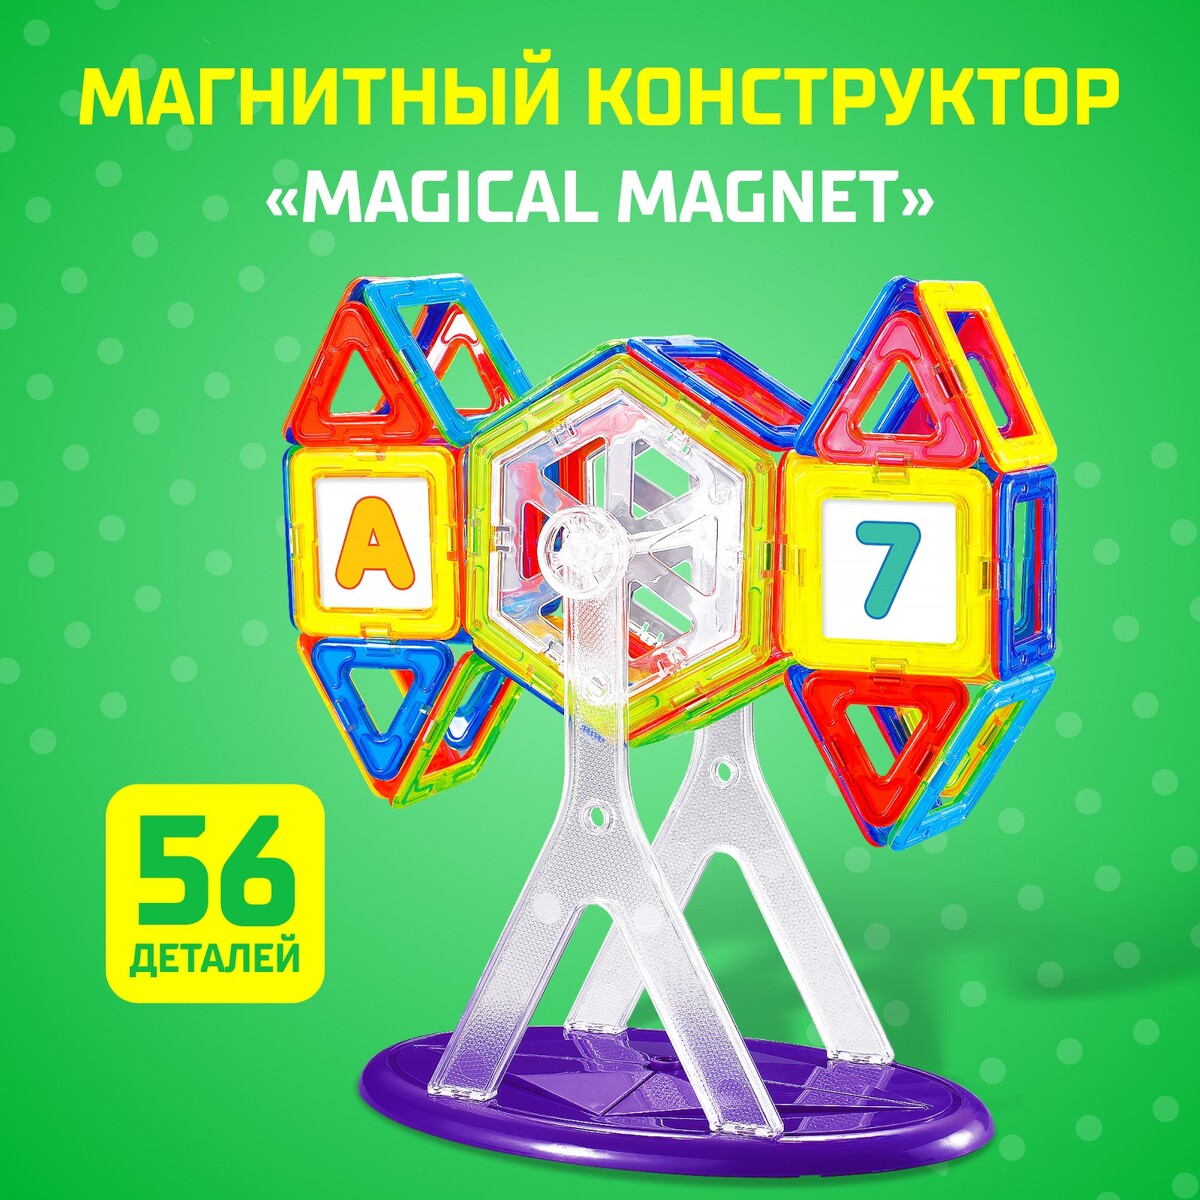 Магнитный конструктор magical magnet, 56 деталей, детали матовые эксцентрики для смесителя zein латунь матовые отражатели с прокладками набор 2 шт